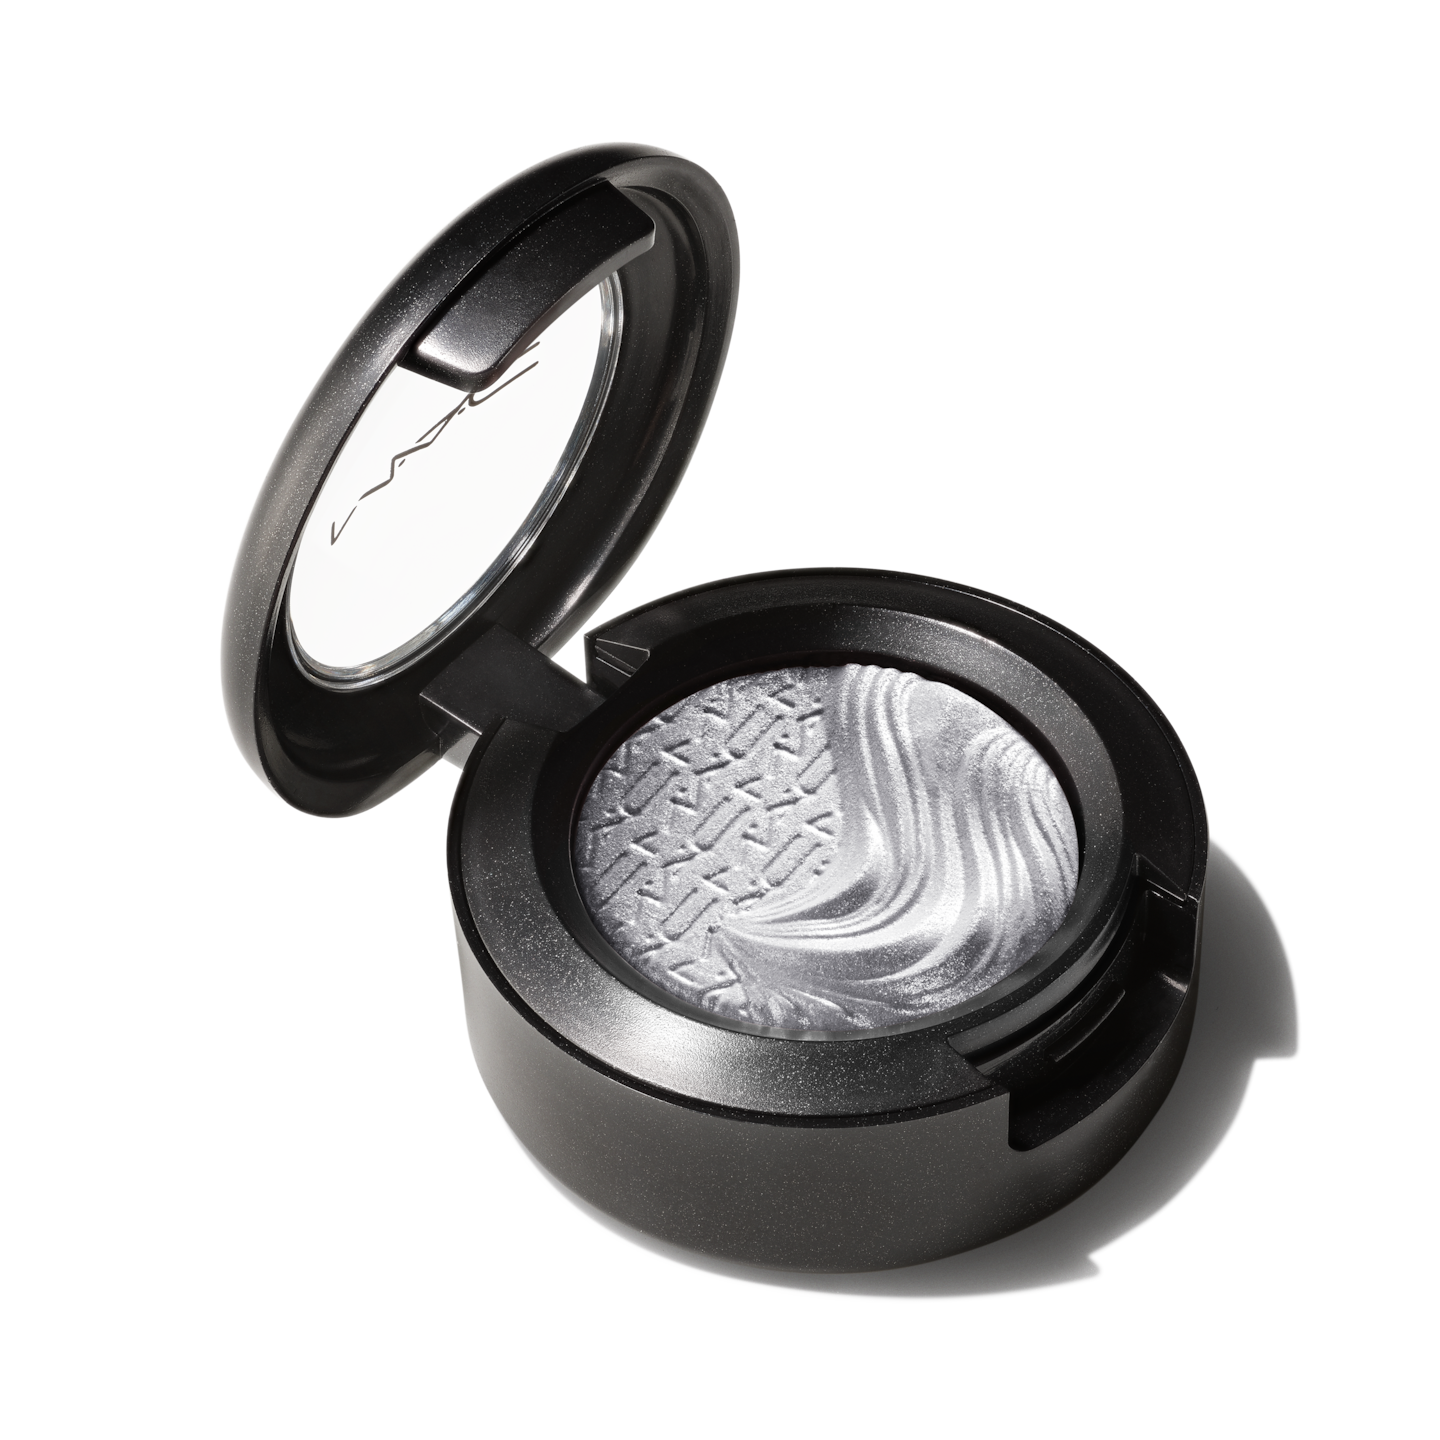 Extra Dimension Eye Shadow – Hybrid Eye Shadow | M∙A∙C Cosmetics